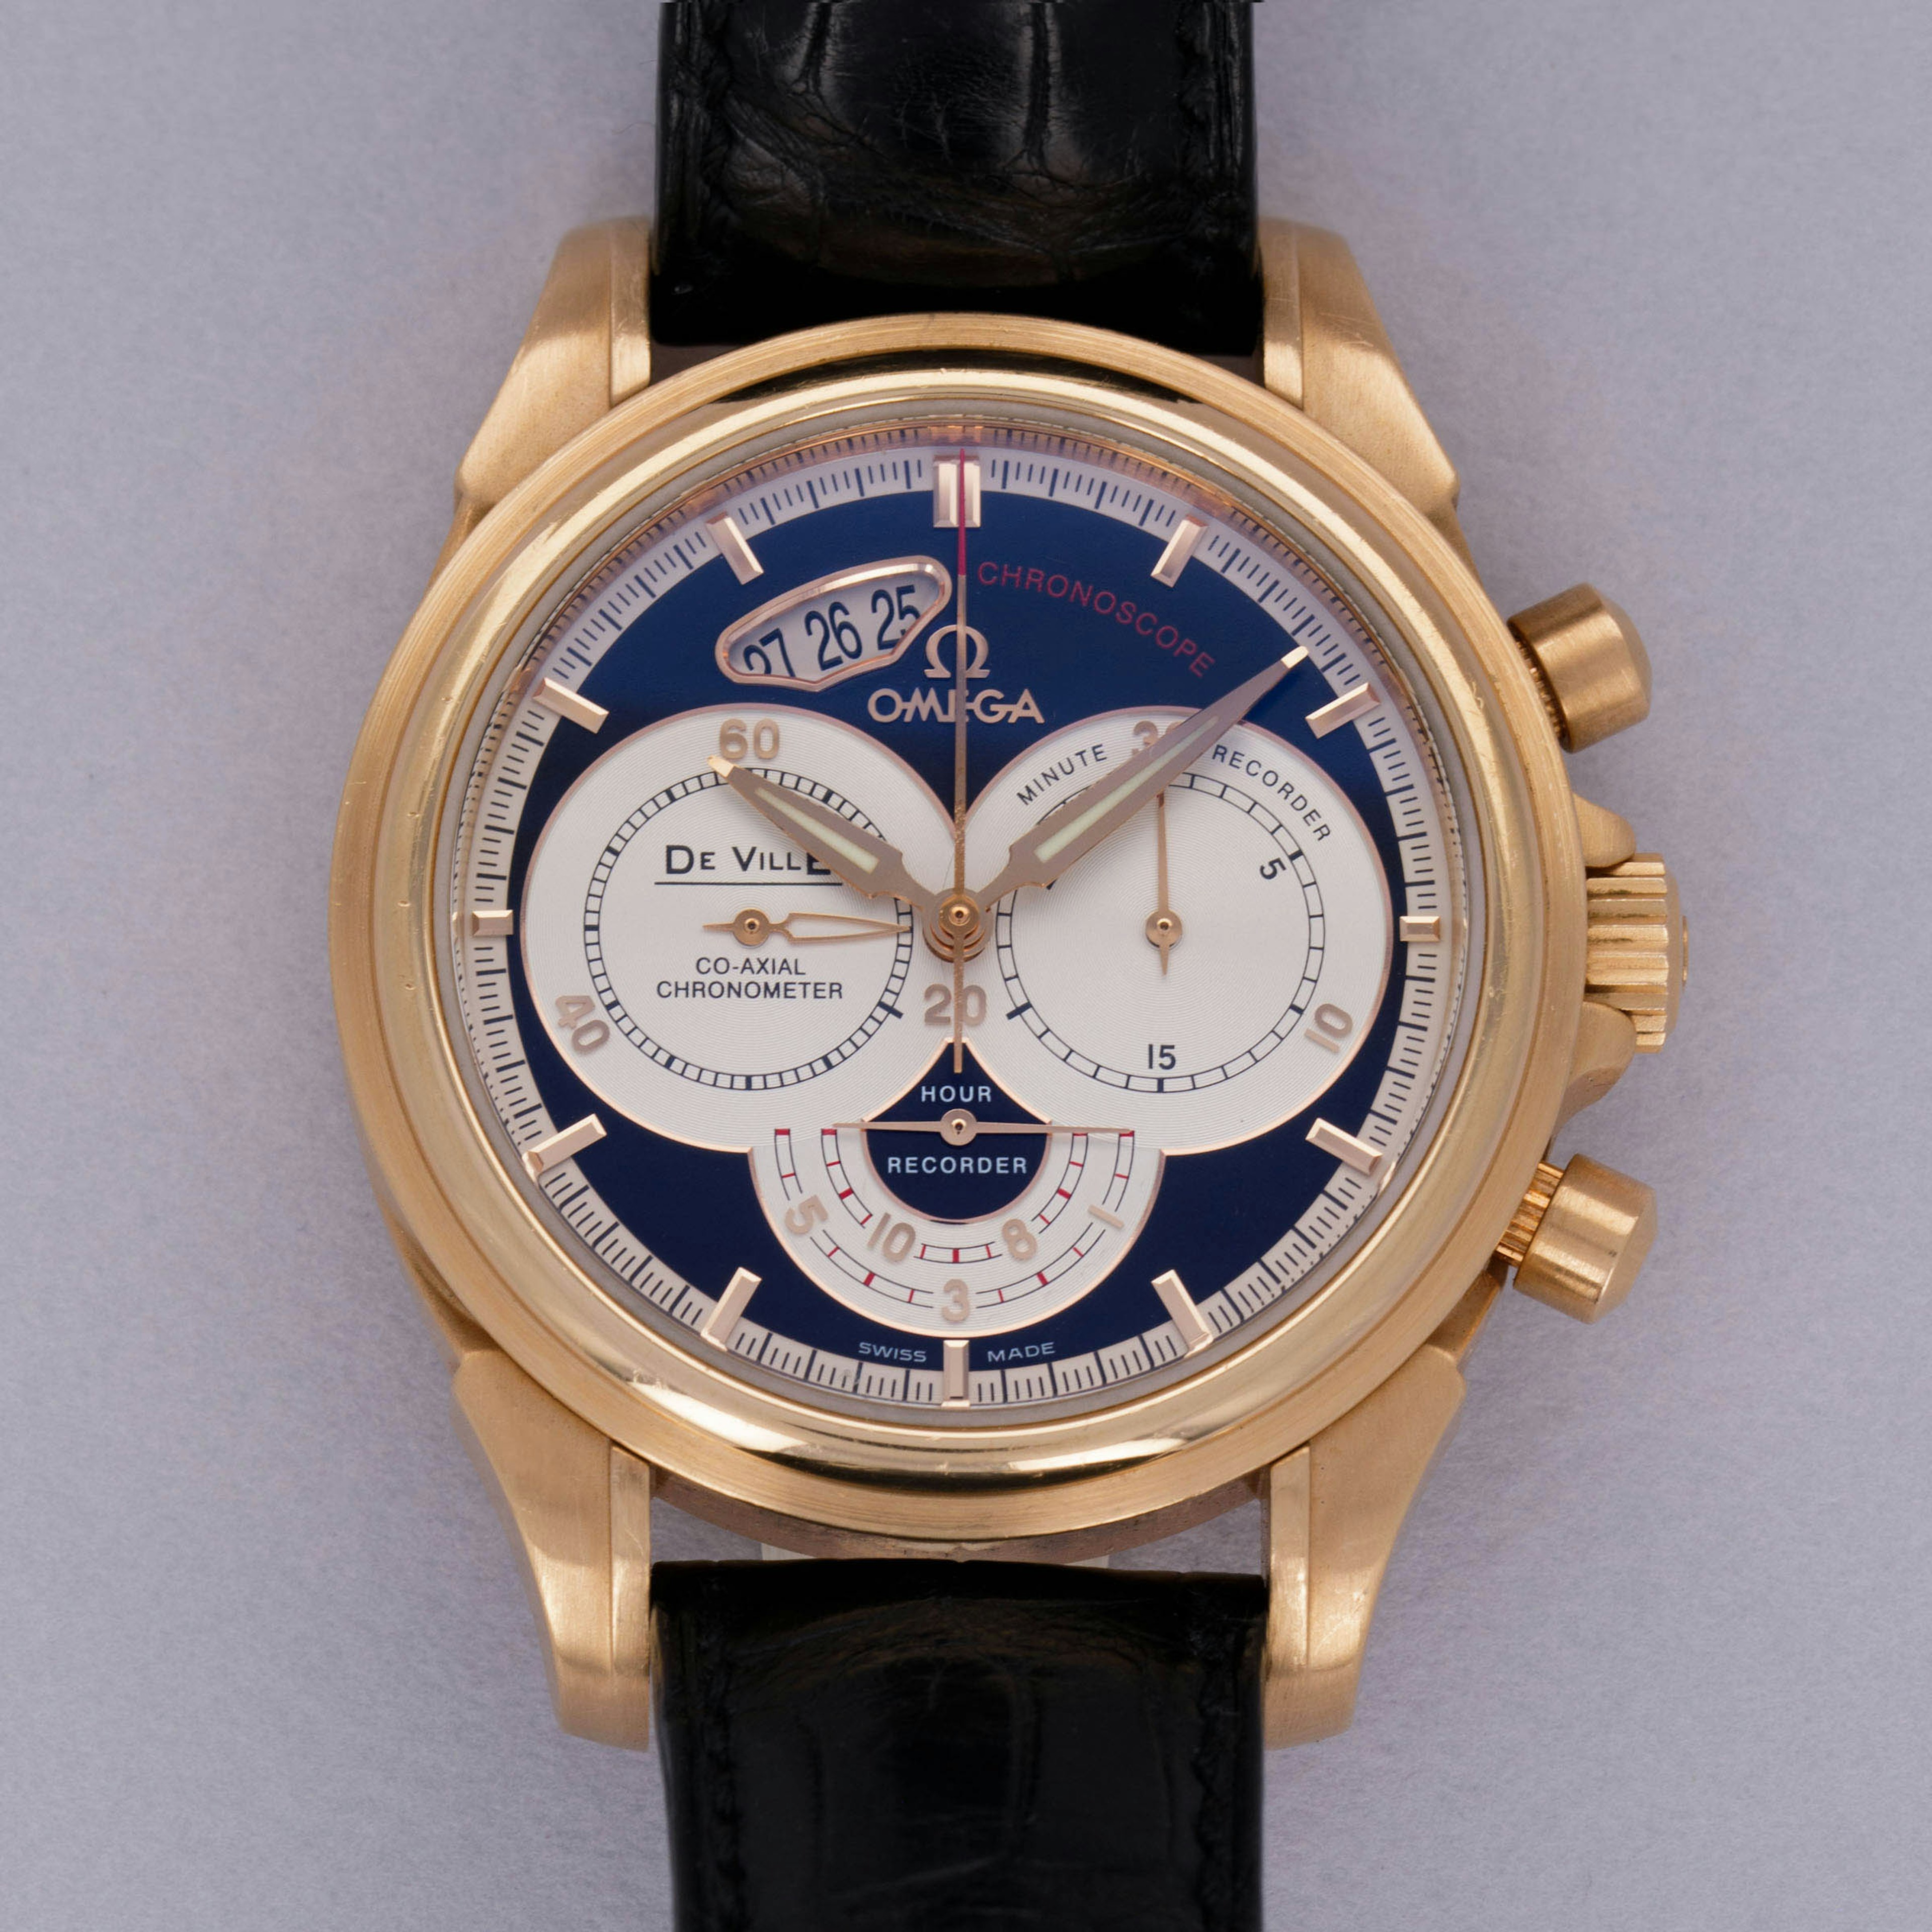 Thumbnail for Omega De Ville Chronoscope Co-Axial Chronometer 4656.50.31 18k RG